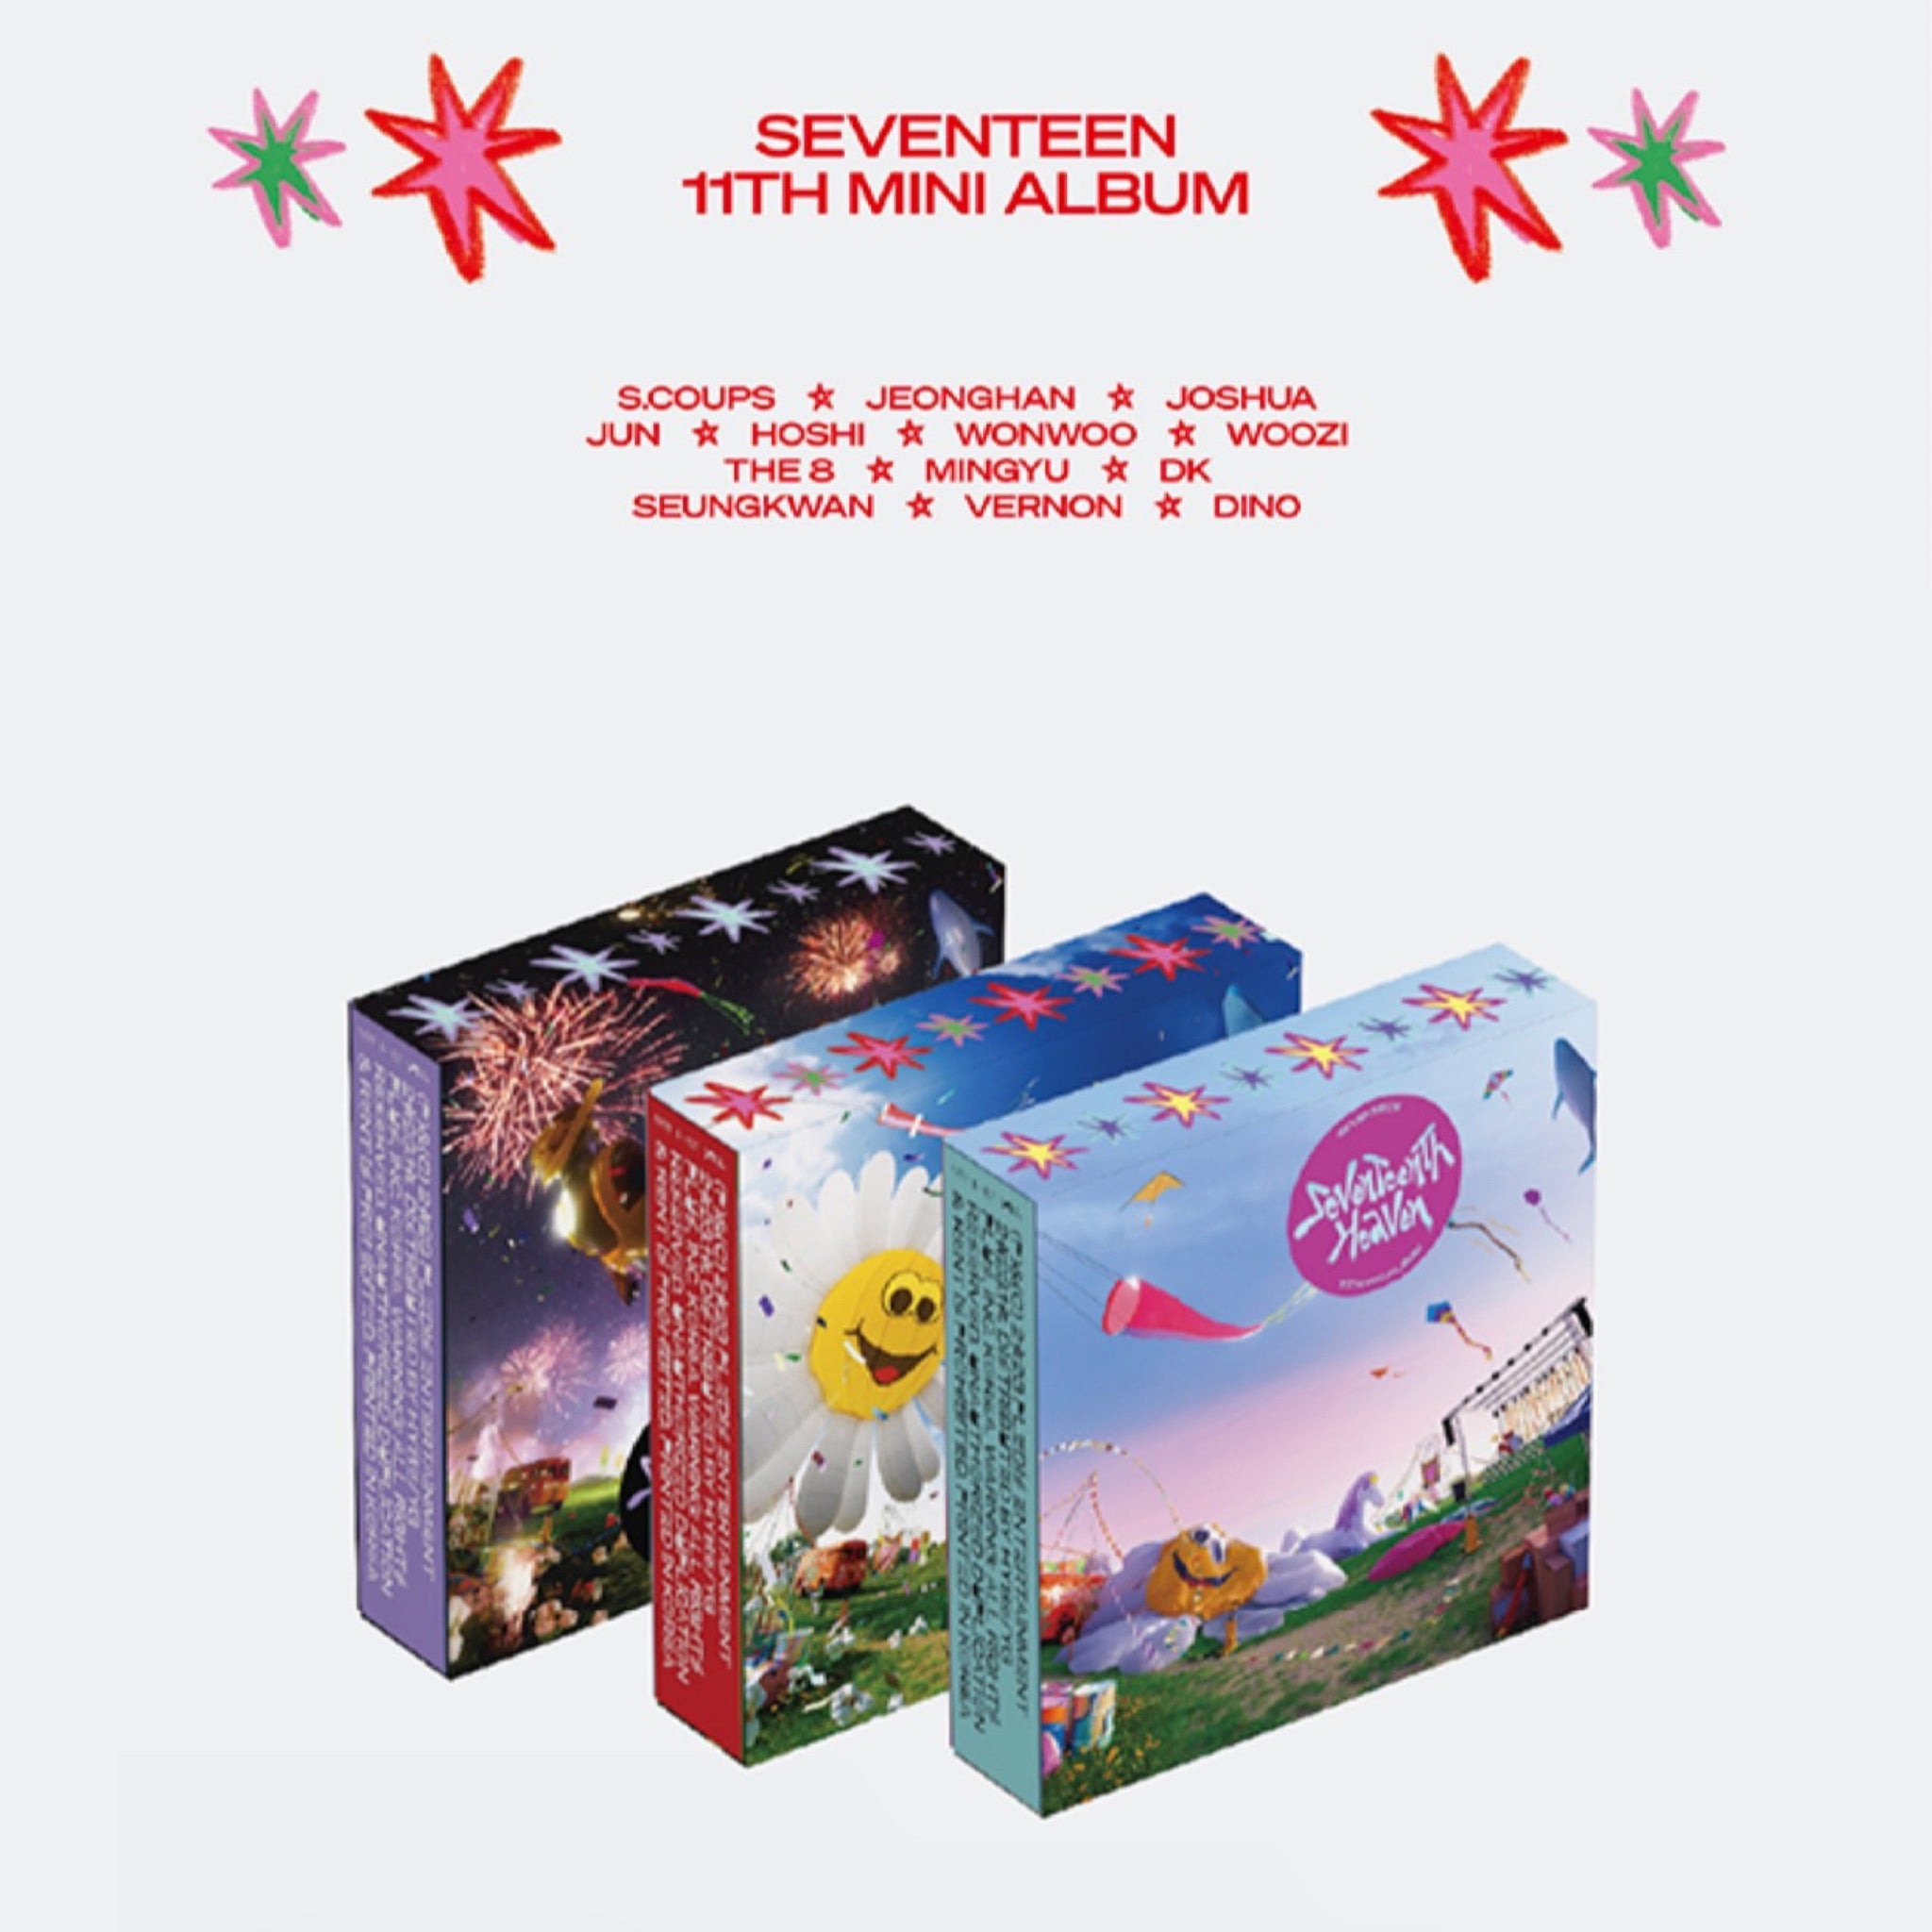 SEVENTEEN - Seventeenth Heaven 11th Mini Album – kheartshop